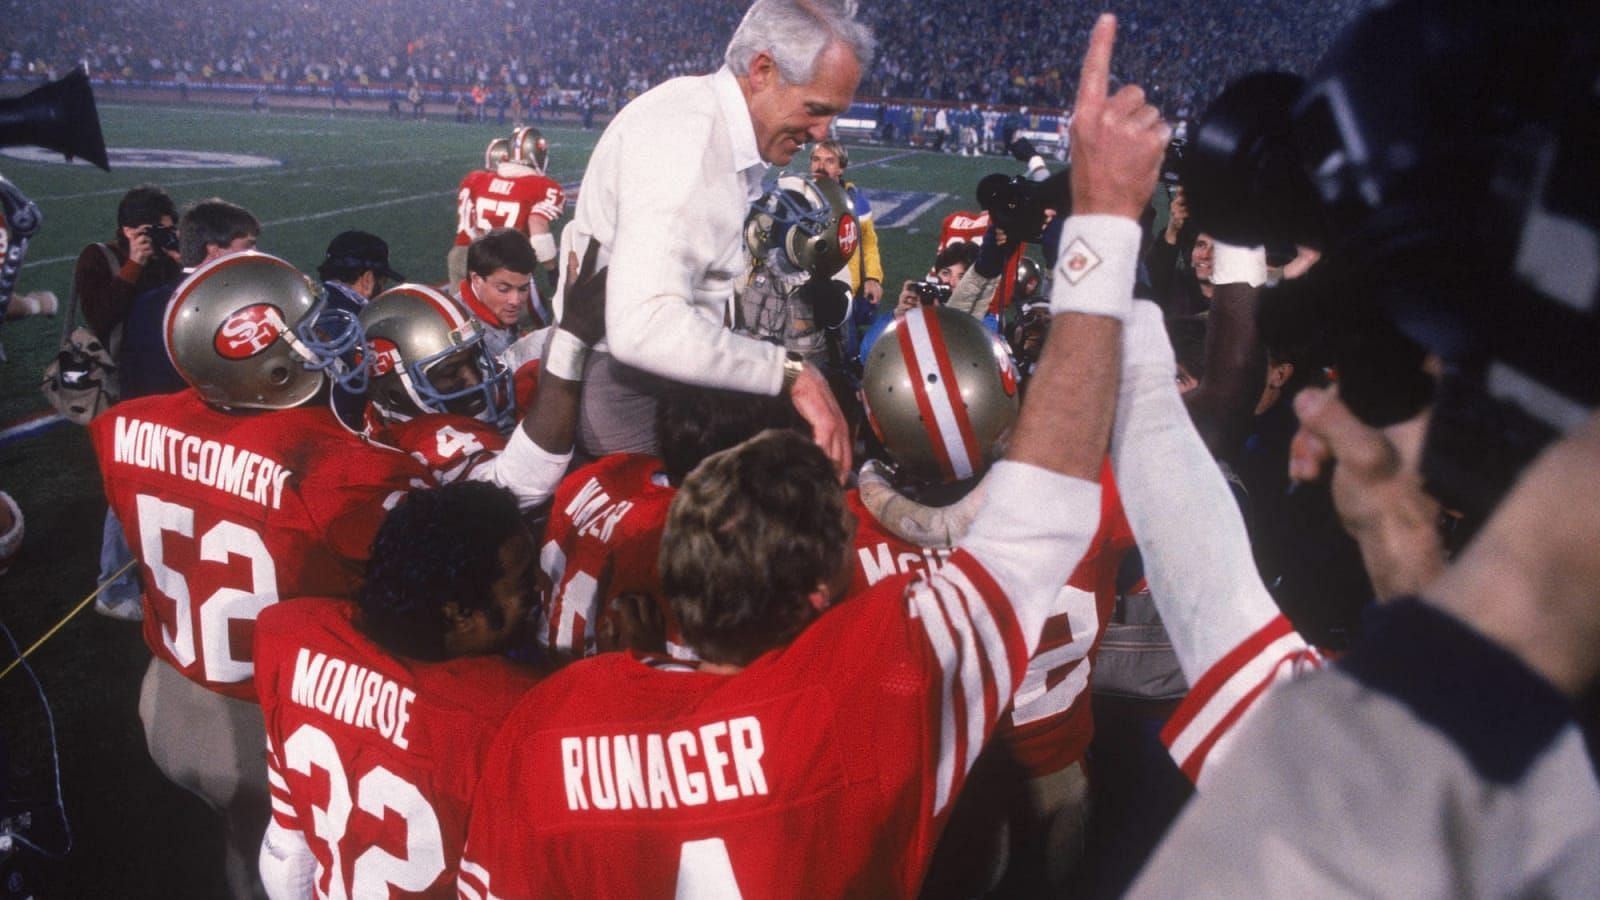 The 49ers hoist Bill Walsh up after winning Super Bowl XVI